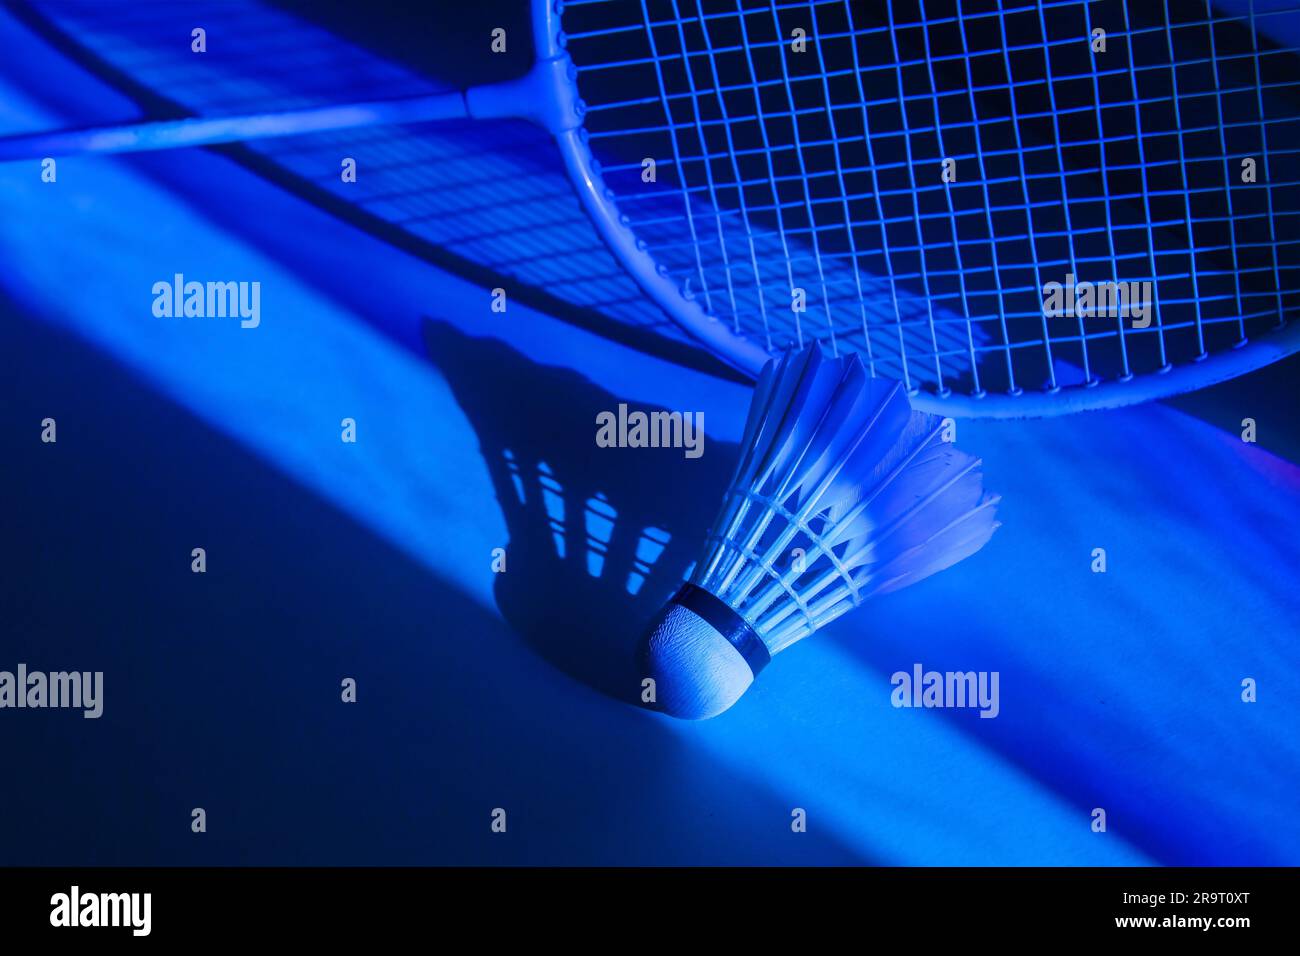 Badminton-Raketen und Shuttleräume in kräftigen holographischen Neonfarben mit Farbverlauf. Horizontales Sportposter, Grußkarten, Kopfzeilen, Website und Stockfoto